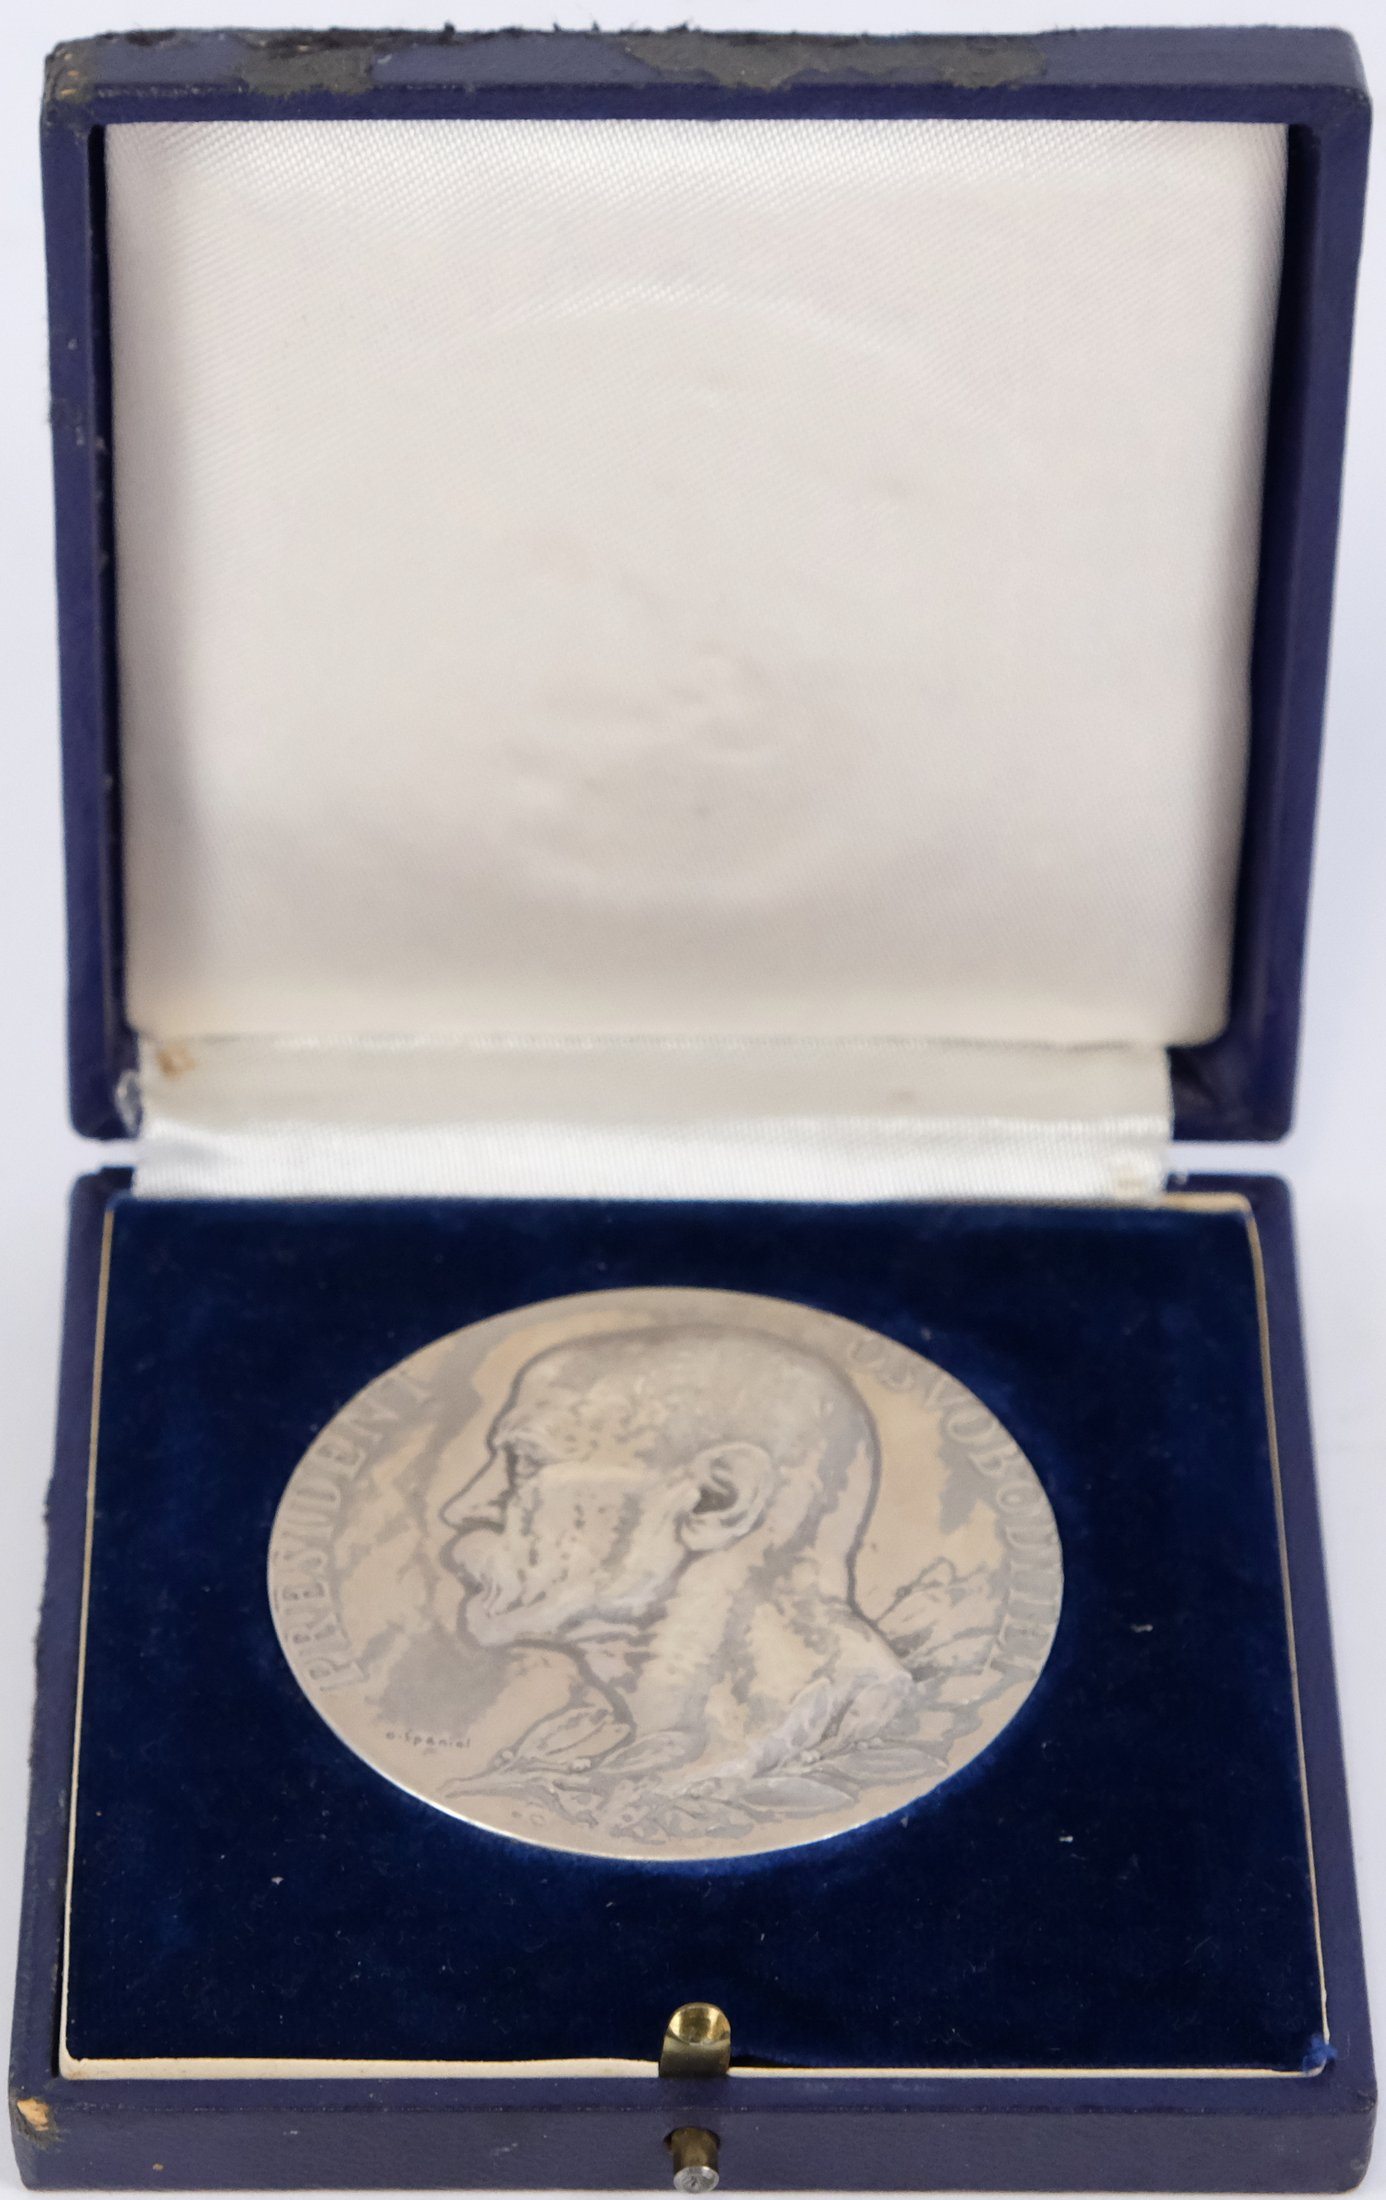 Otakar Španiel - Stříbrná medaile k úmrtí T.G.Masaryka 1937,stříbro 987/1000.Hrubá hmotnost 79,6g